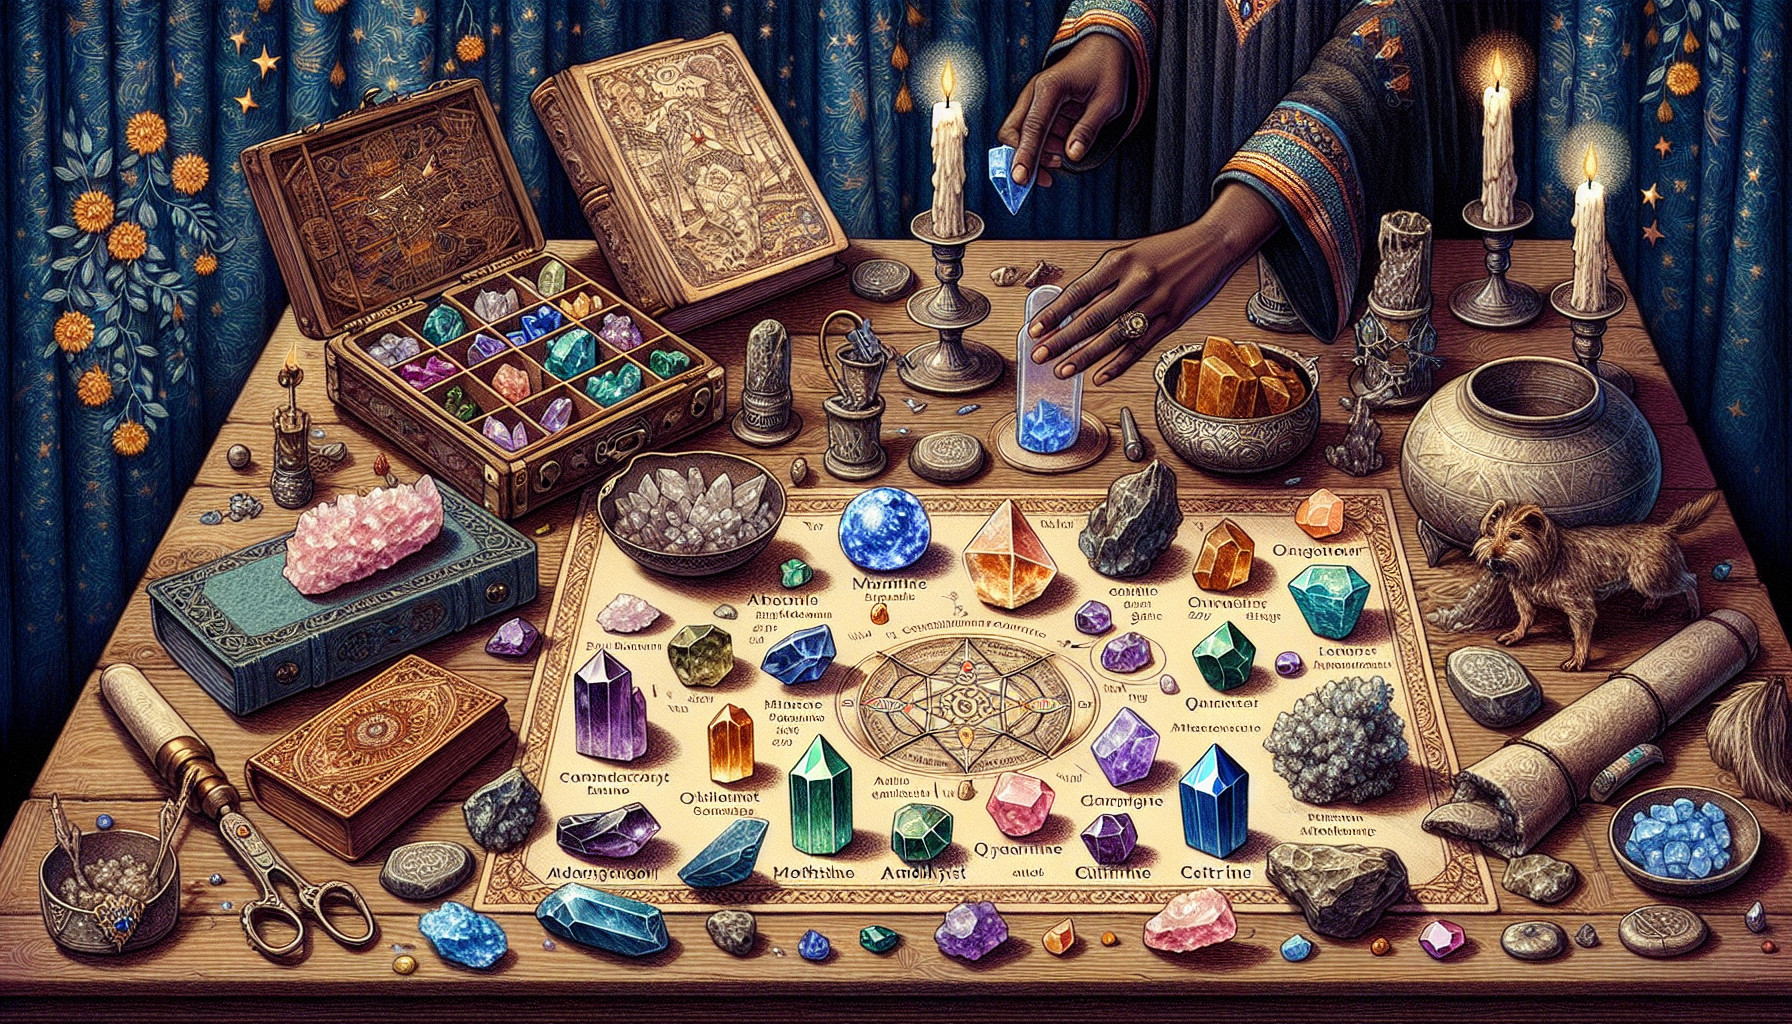 Cómo Utilizar Cristales Y Gemas En Rituales Mágicos